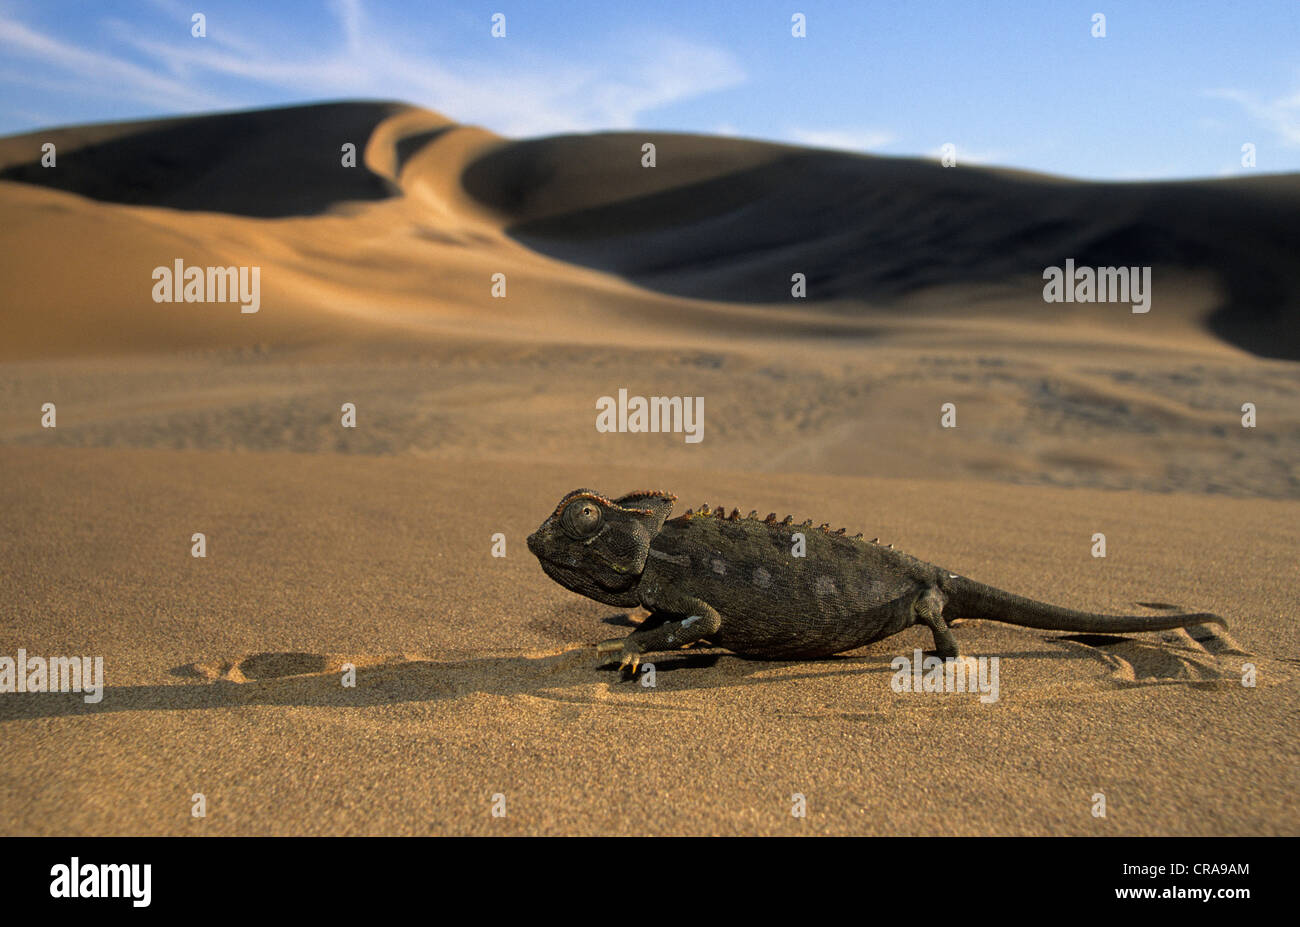 (Chamaeleon chamaeleo namaquensis namaqua), dans le désert, désert du namib, Namibie, Afrique Banque D'Images